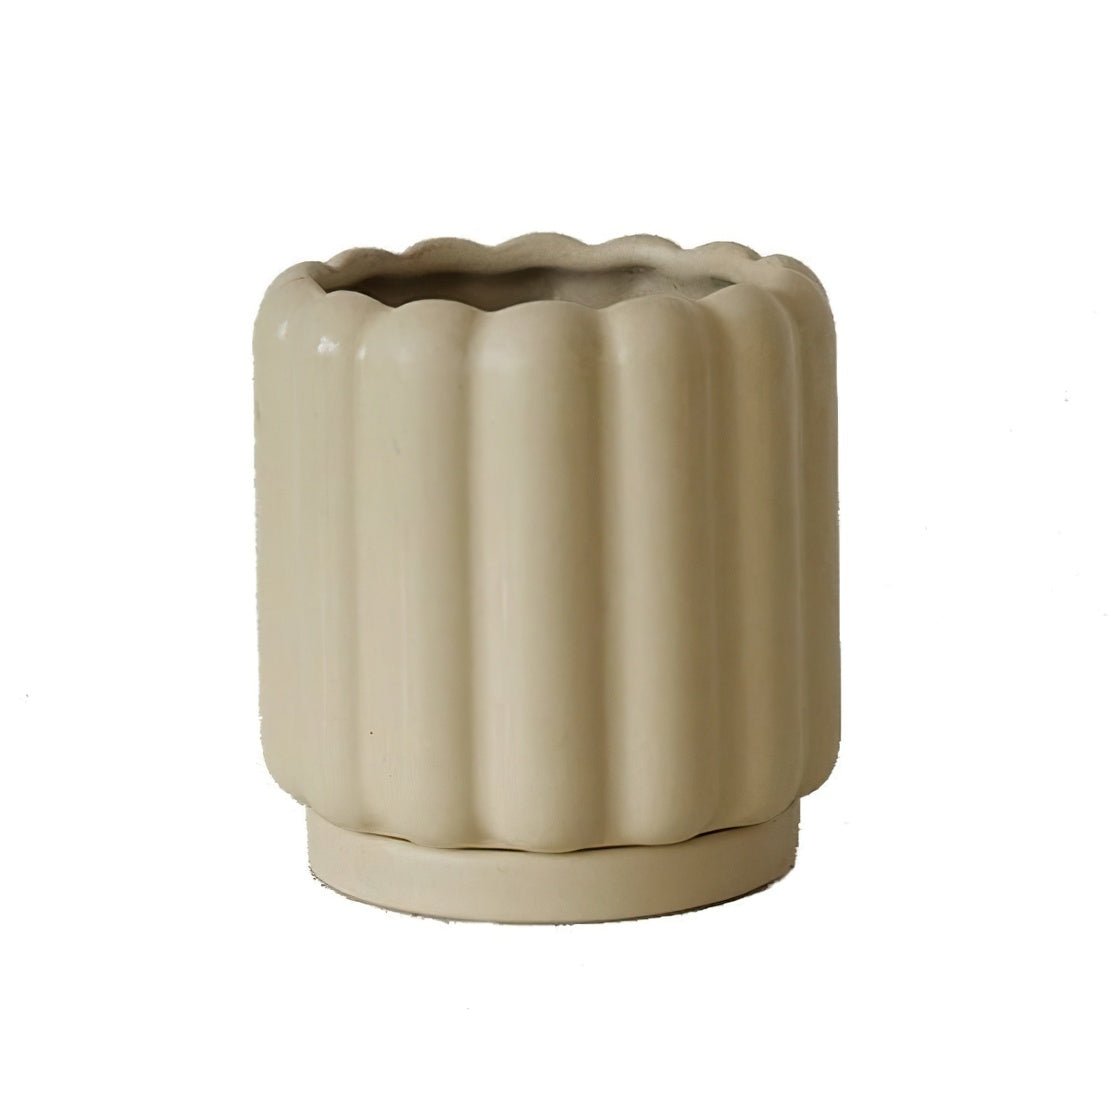 Beige, ceramic picket fence flowerpot vase